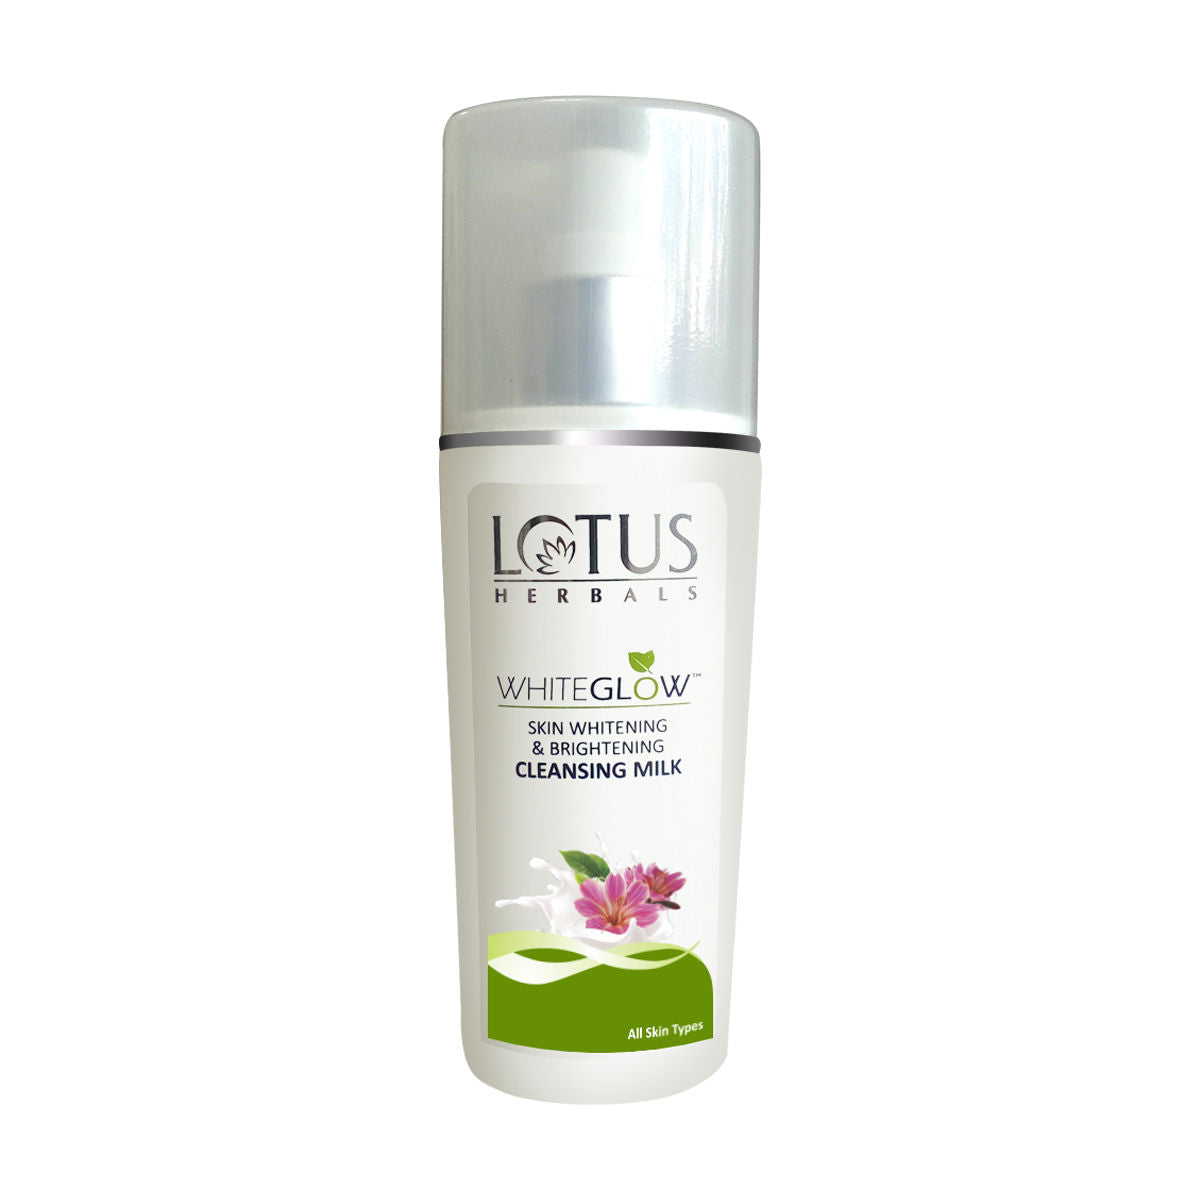 Lotus Herbals Whiteglow Skin Whitening & Brightening Cleansing Milk Lotus Herbals